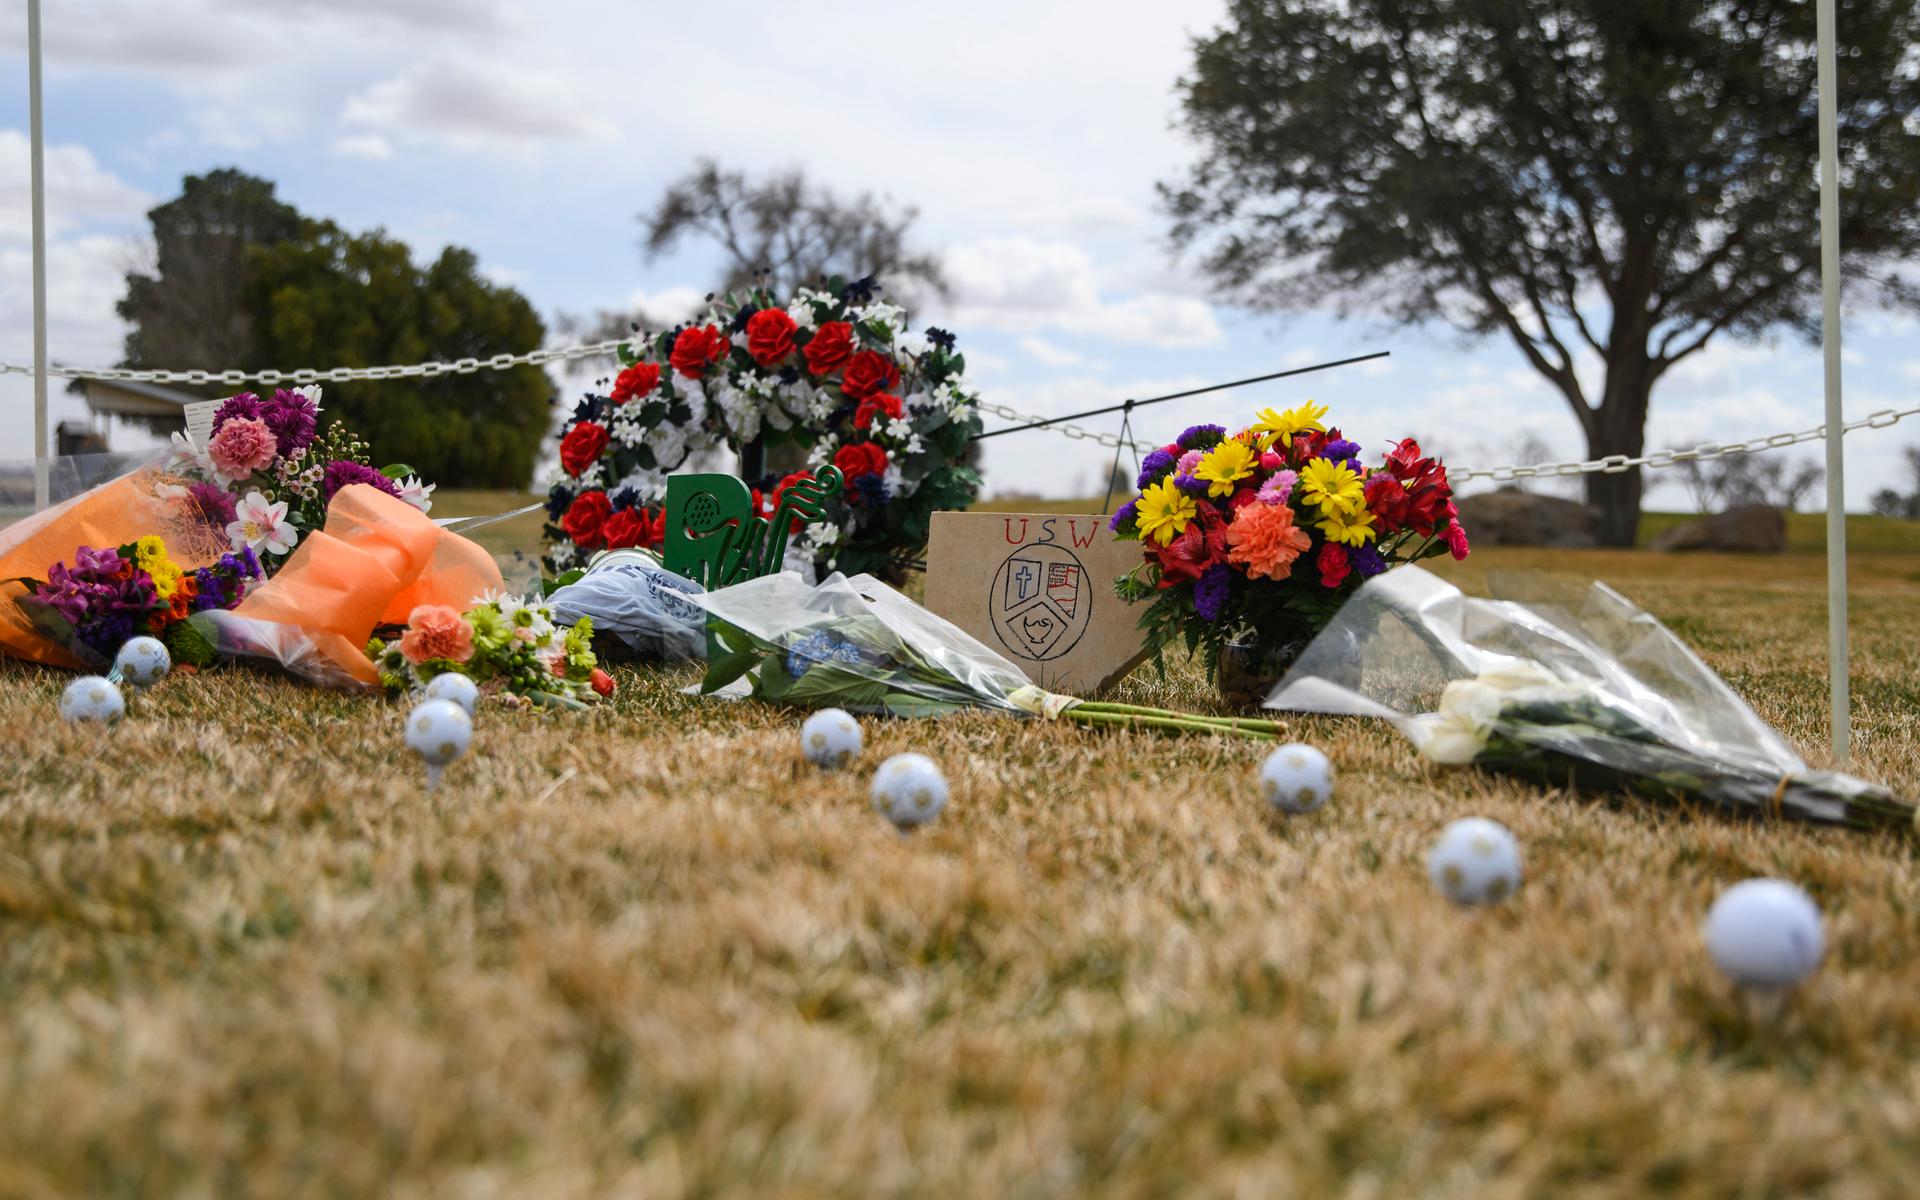 Totalt omkom nio personer i olyckan. Nära platsen har personer lämnat blommor till minne av offren.